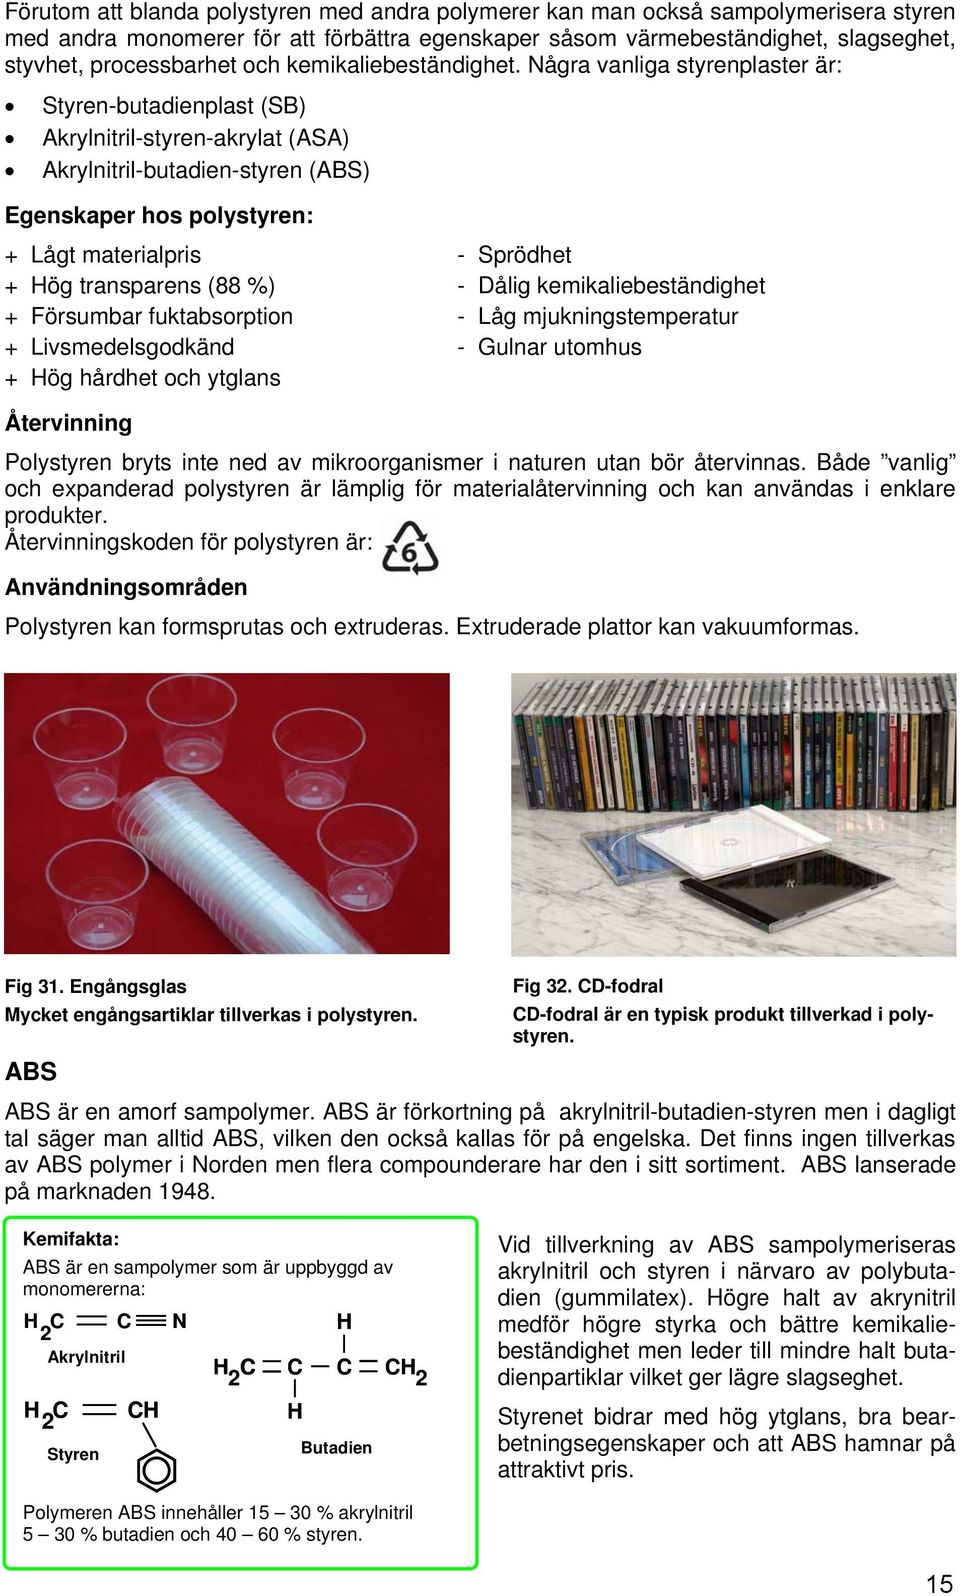 Några vanliga styrenplaster är: Styren-butadienplast (SB) Akrylnitril-styren-akrylat (ASA) Akrylnitril-butadien-styren (ABS) Egenskaper hos polystyren: + Lågt materialpris - Sprödhet + Hög